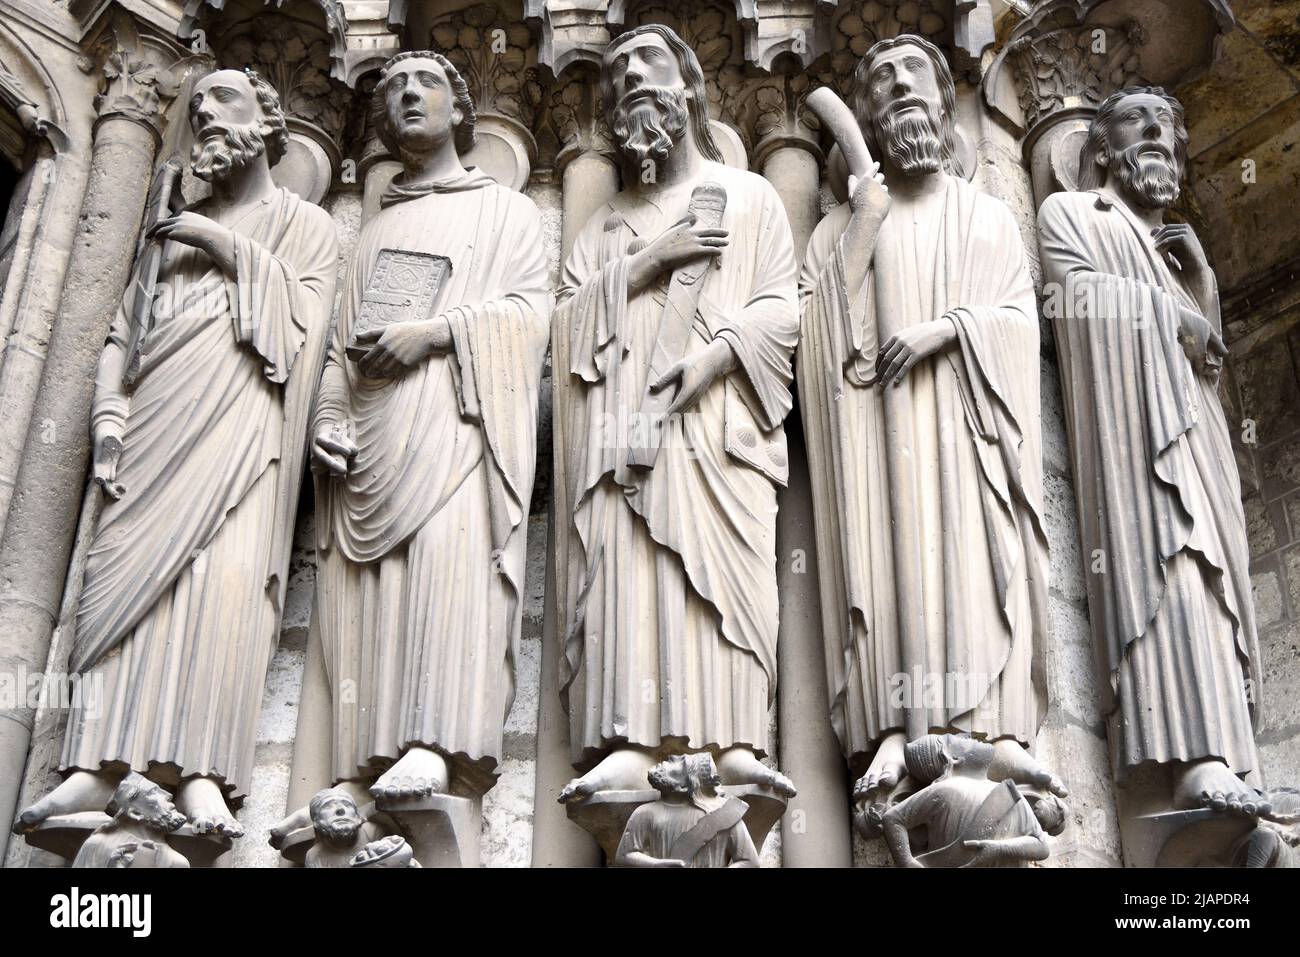 Statues de jamb, Cathédrale de Chartres, à environ 80 km au sud-ouest de Paris, France. Ces statues de jambe sont sur le côté droit du portail central du porche sud. De gauche à droite : Saint-Paul tenant l'épée qui l'a tué, debout au-dessus de l'empereur Néron; Saint-Jean le Divin tenant un livre; Saint-Jacques le Grand au-dessus de Hérode Agrippa; Saint-Jacques le petit tenant le club avec lequel il a été battu à mort; Saint-Bartholomée. Saint-Jacques le plus grand porte une pochette de pèlerin avec des coquilles Saint-Jacques, un symbole porté par les pèlerins qui ont voyagé à son sanctuaire à Saint-Jacques-de-Compostelle. Banque D'Images